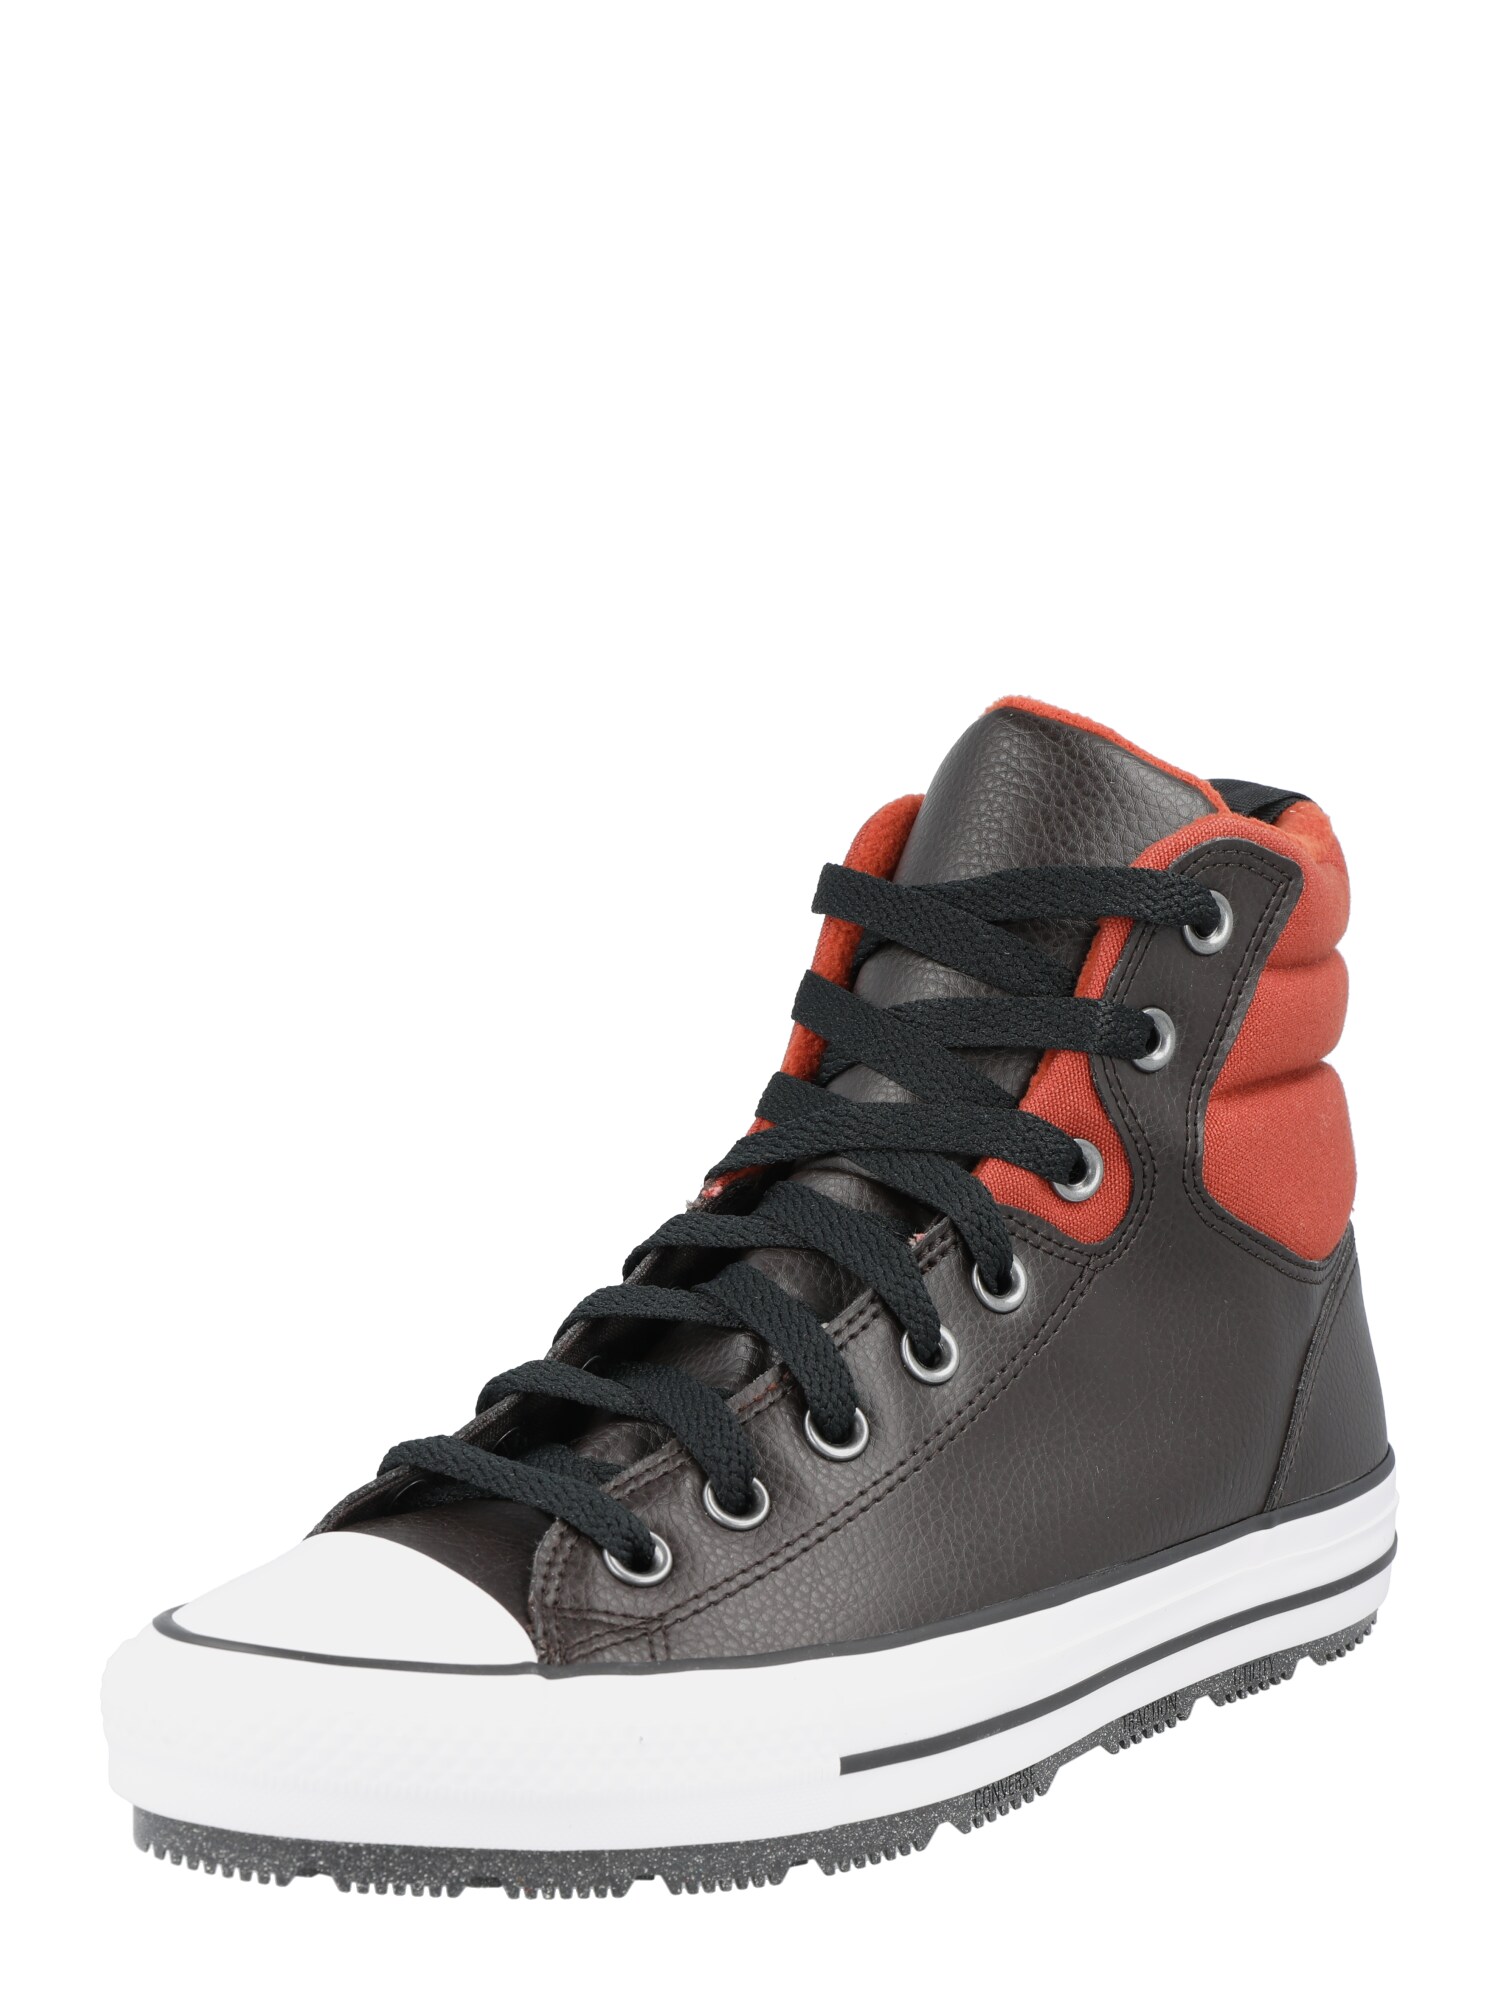 Converse CONVERSE Sneaker 'Chuck Taylor All Star Berkshire' dunkelbraun / dunkelorange / schwarz